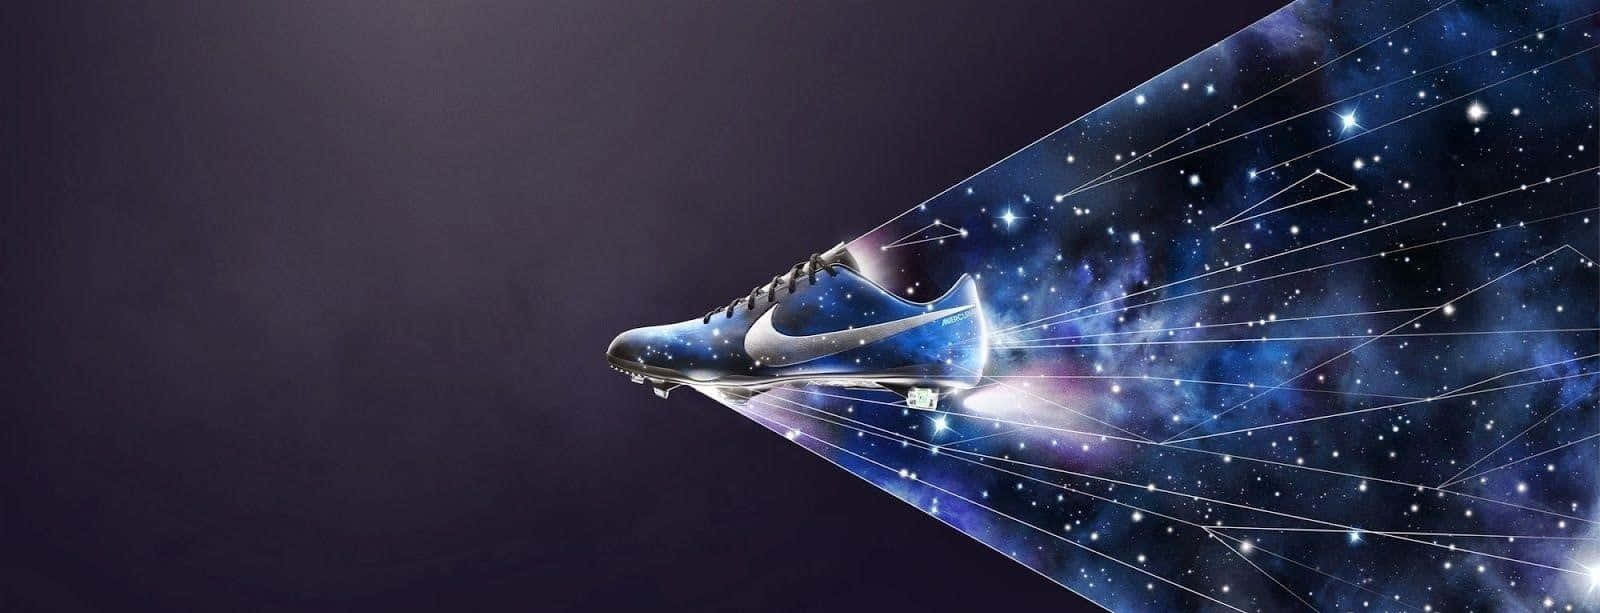 Diseñoabstracto Nike Galaxy Mercurial Vapor. Fondo de pantalla